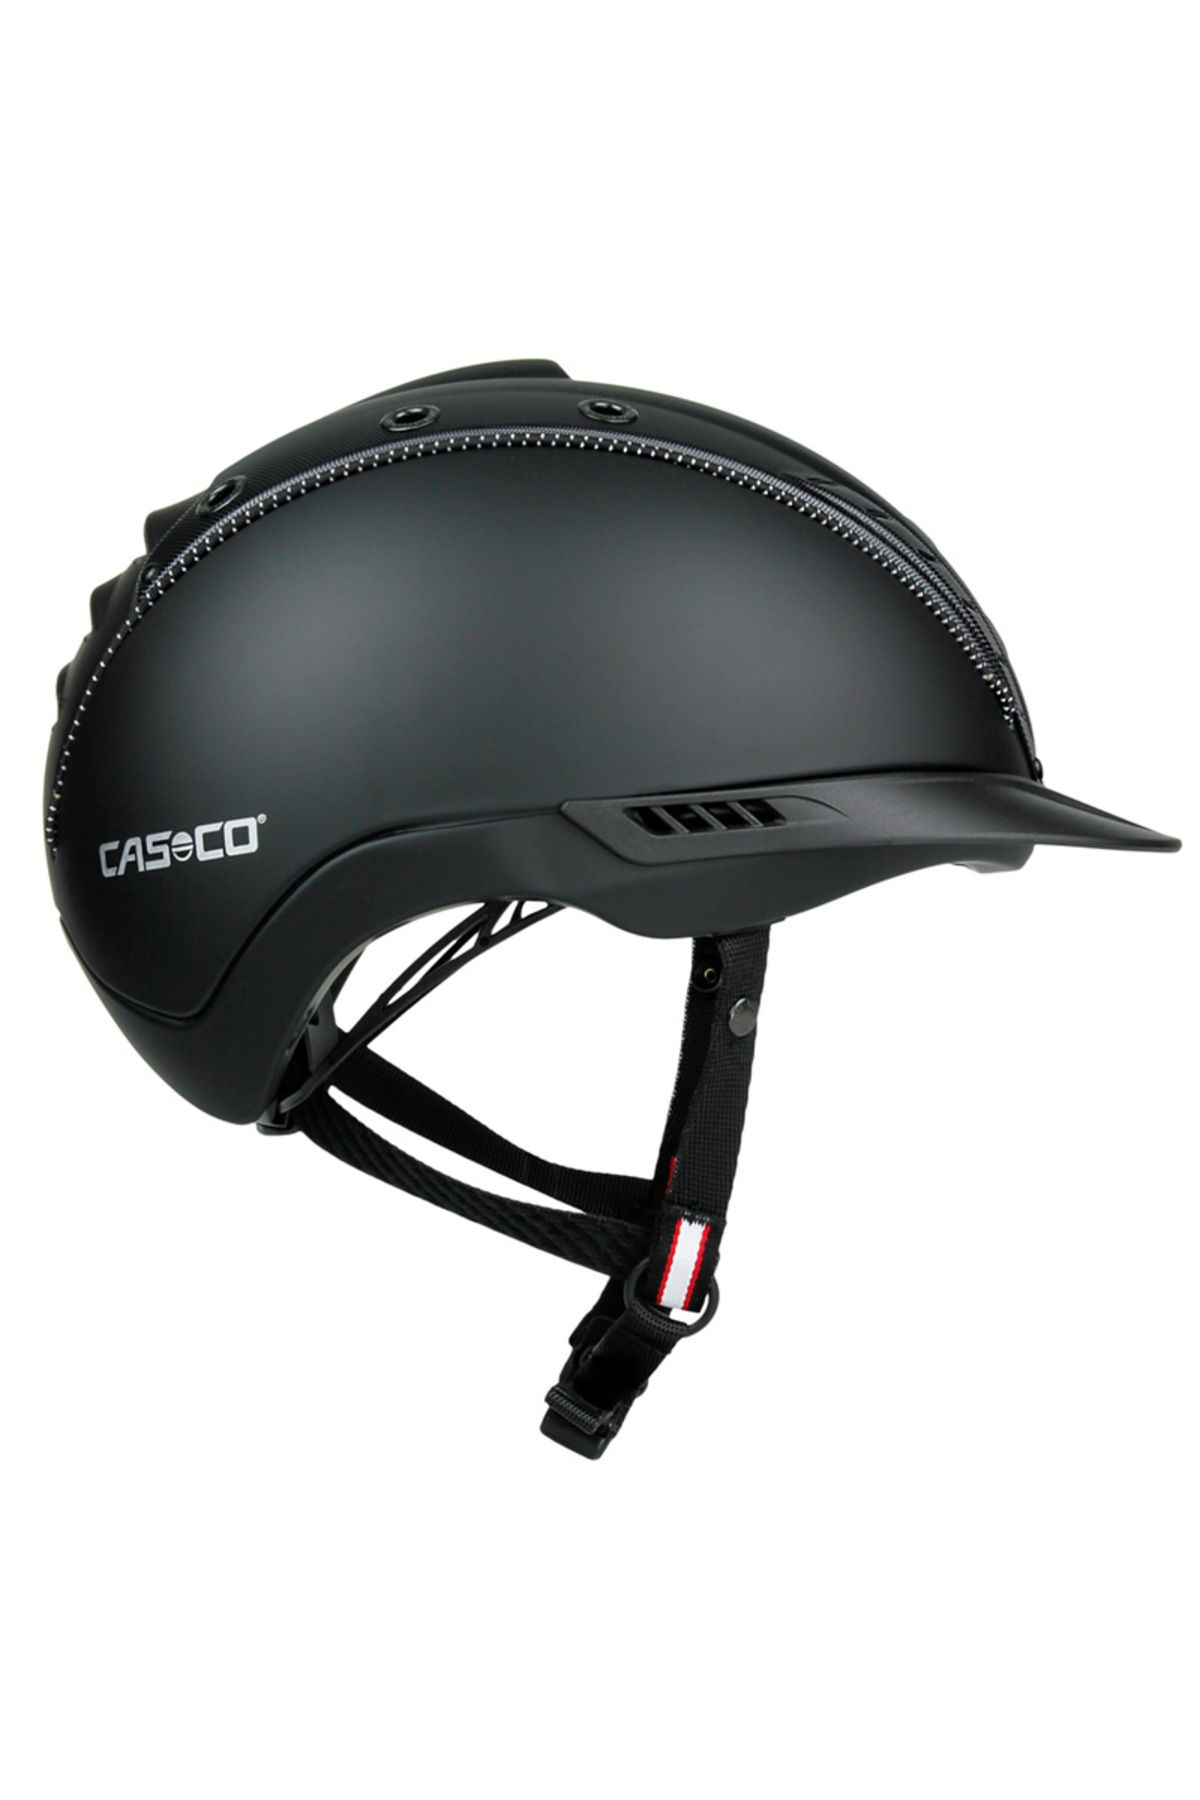 Casco TOG - CASCO MISTRALL-2 EDITION Riding Helmet S (50-54)